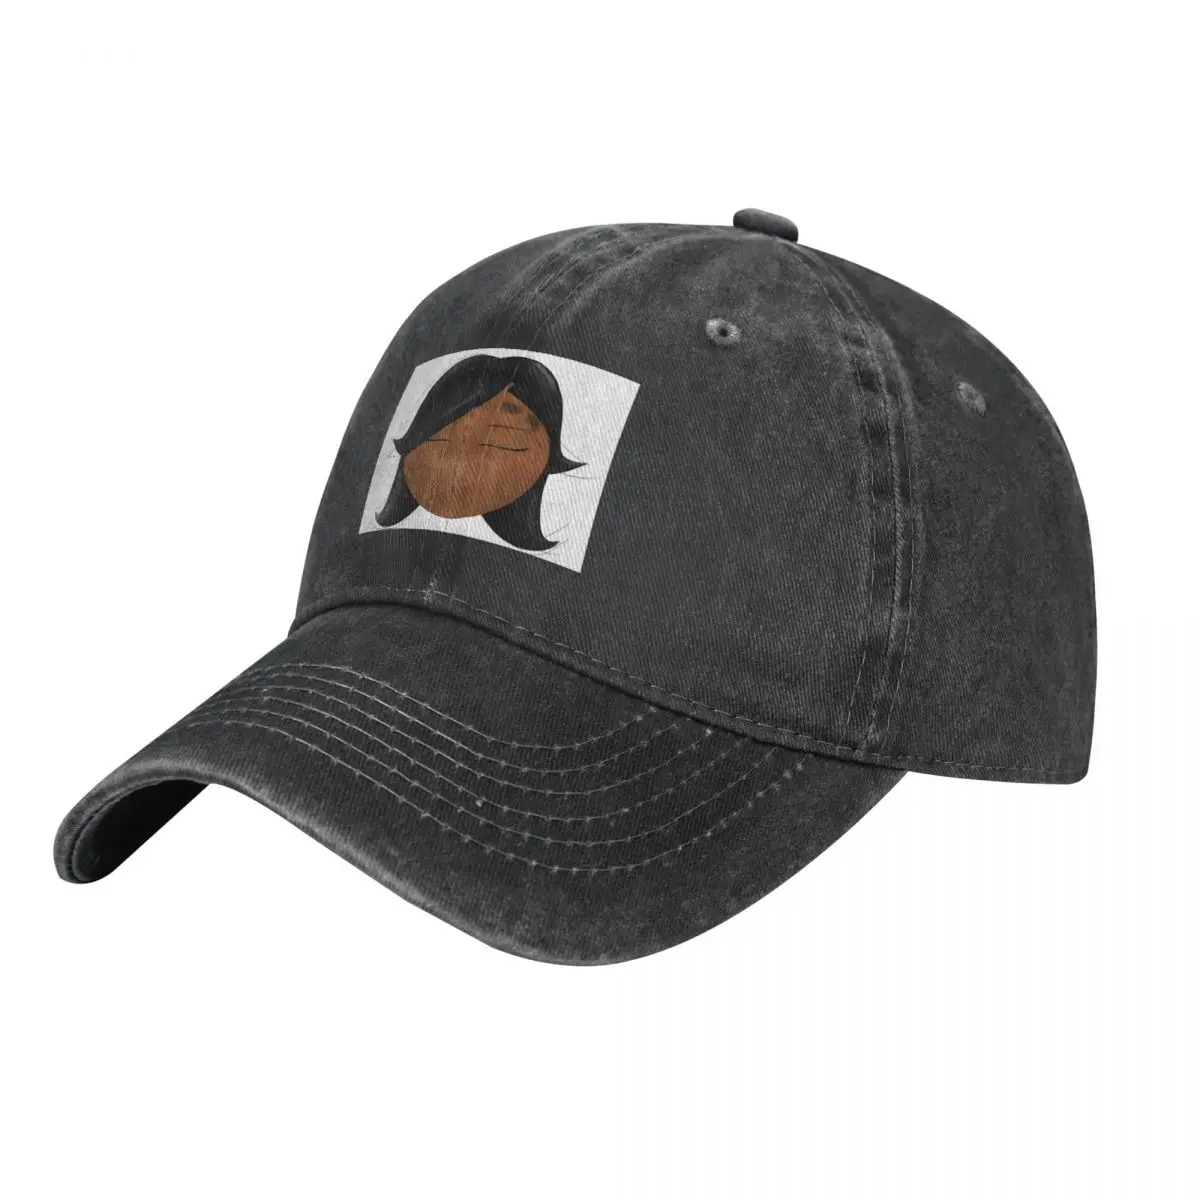 

Destiny Shade 5 ковбойская шляпа Rave Hat Бейсболка для мужчин и женщин